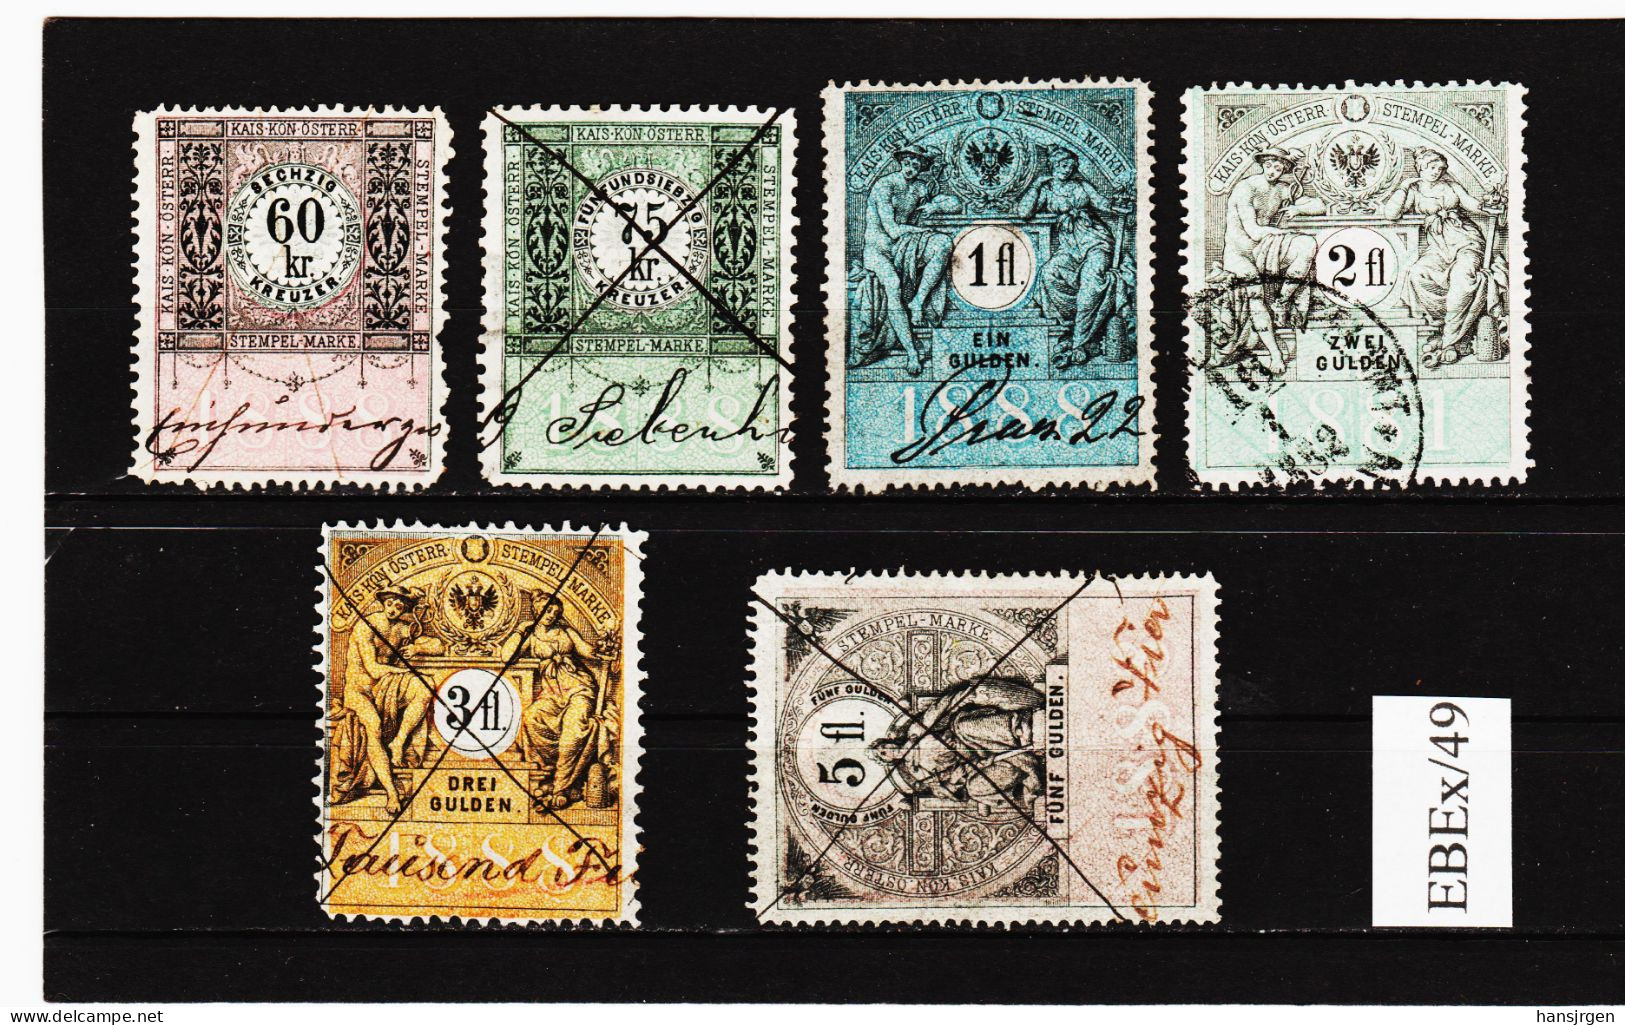 EBEx/49 LOT STEMPELMARKEN STEUERMARKEN ÖSTERREICH 1888  60-75 Kreuzer 1-2-3-5-  Entwertet - Revenue Stamps